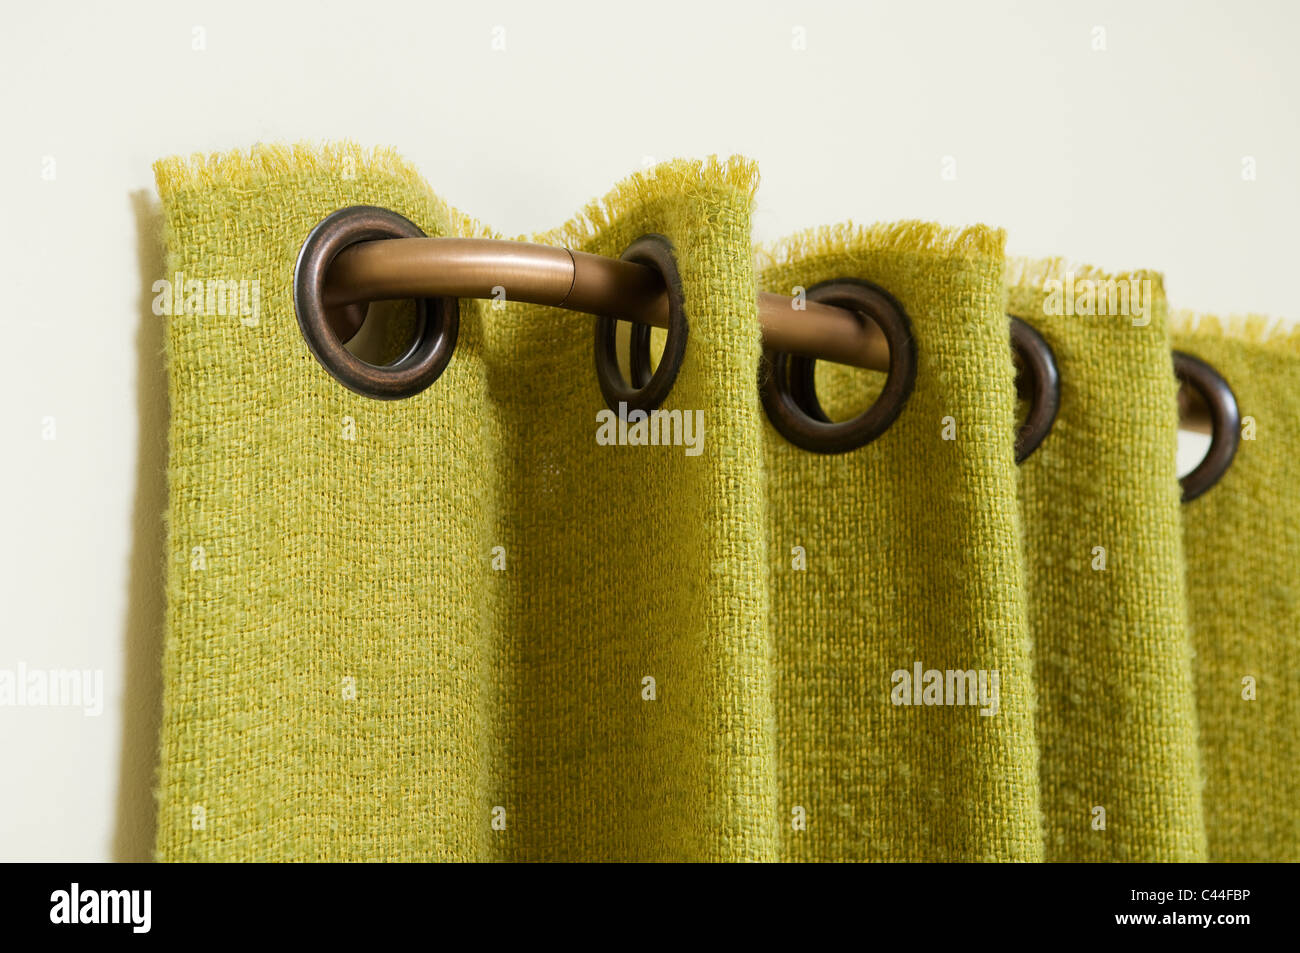 Detail von einem grünen Vorhang mit Ösen, angeschlossen an eine gebogene Messing-Vorhangstange Stockfoto